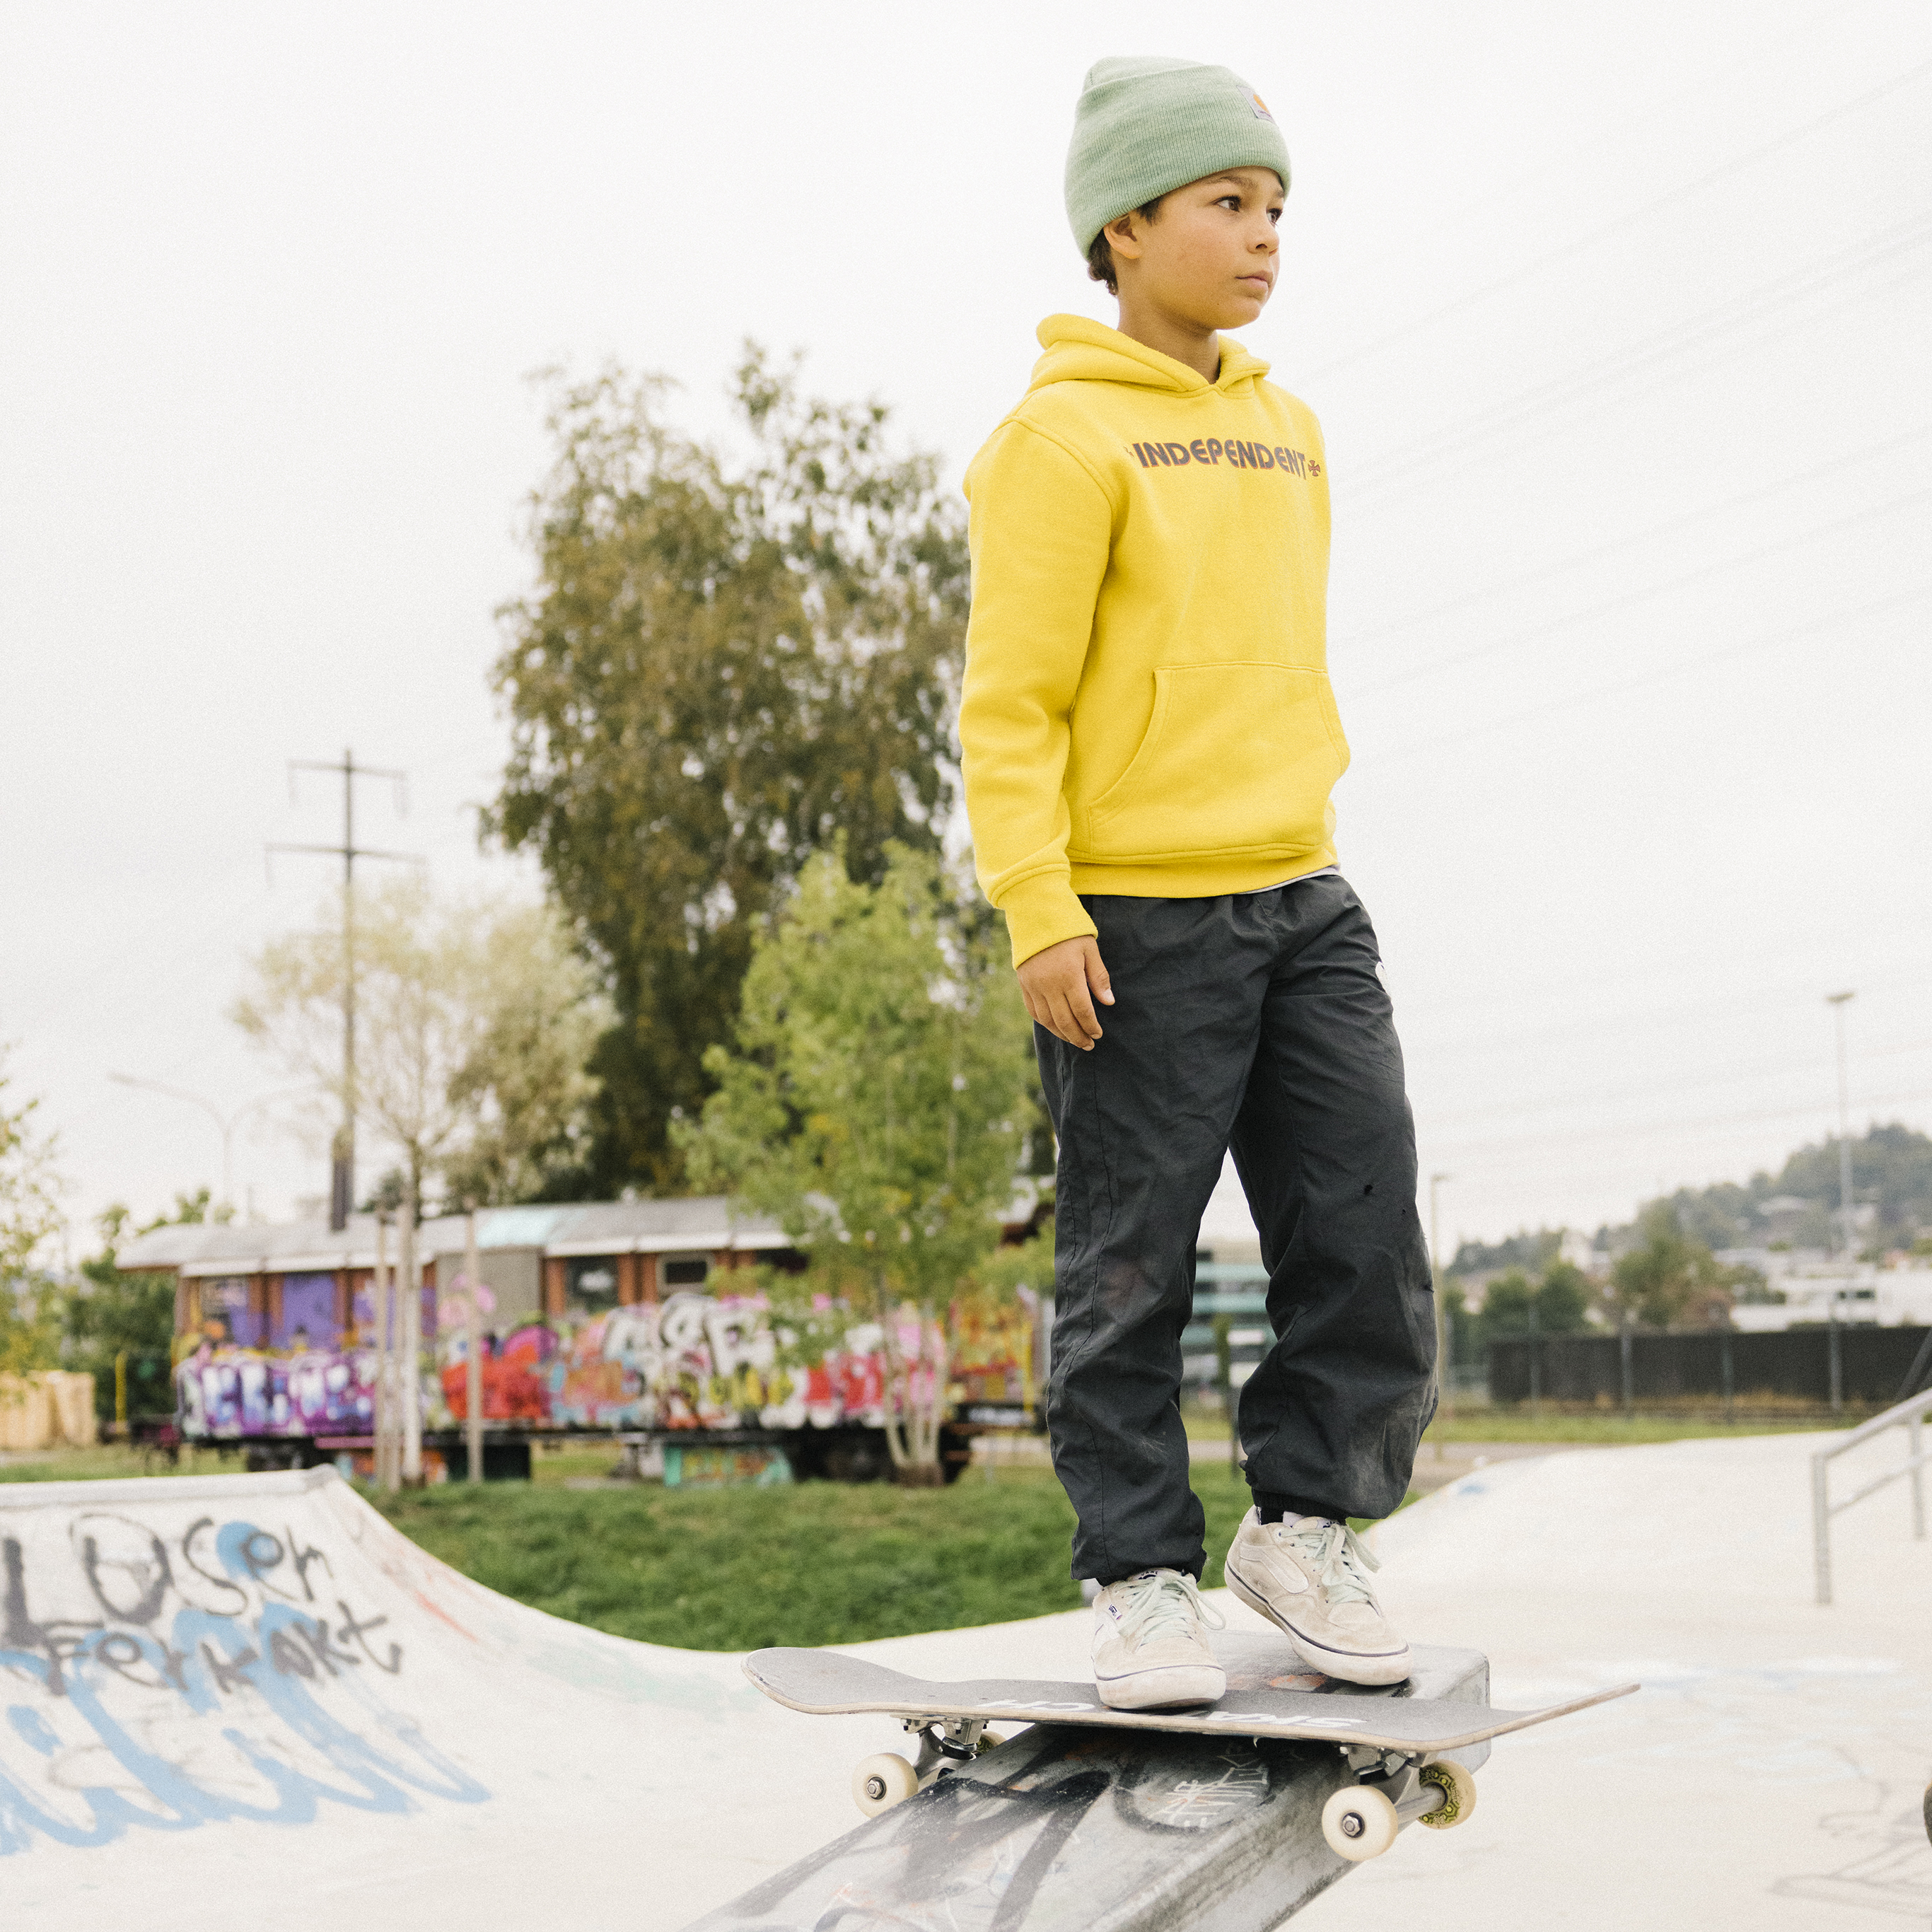 Ein Jugendlicher steht mit seinem Skateboard auf einer Grindstange und blickt selbstbewusst in die Ferne.